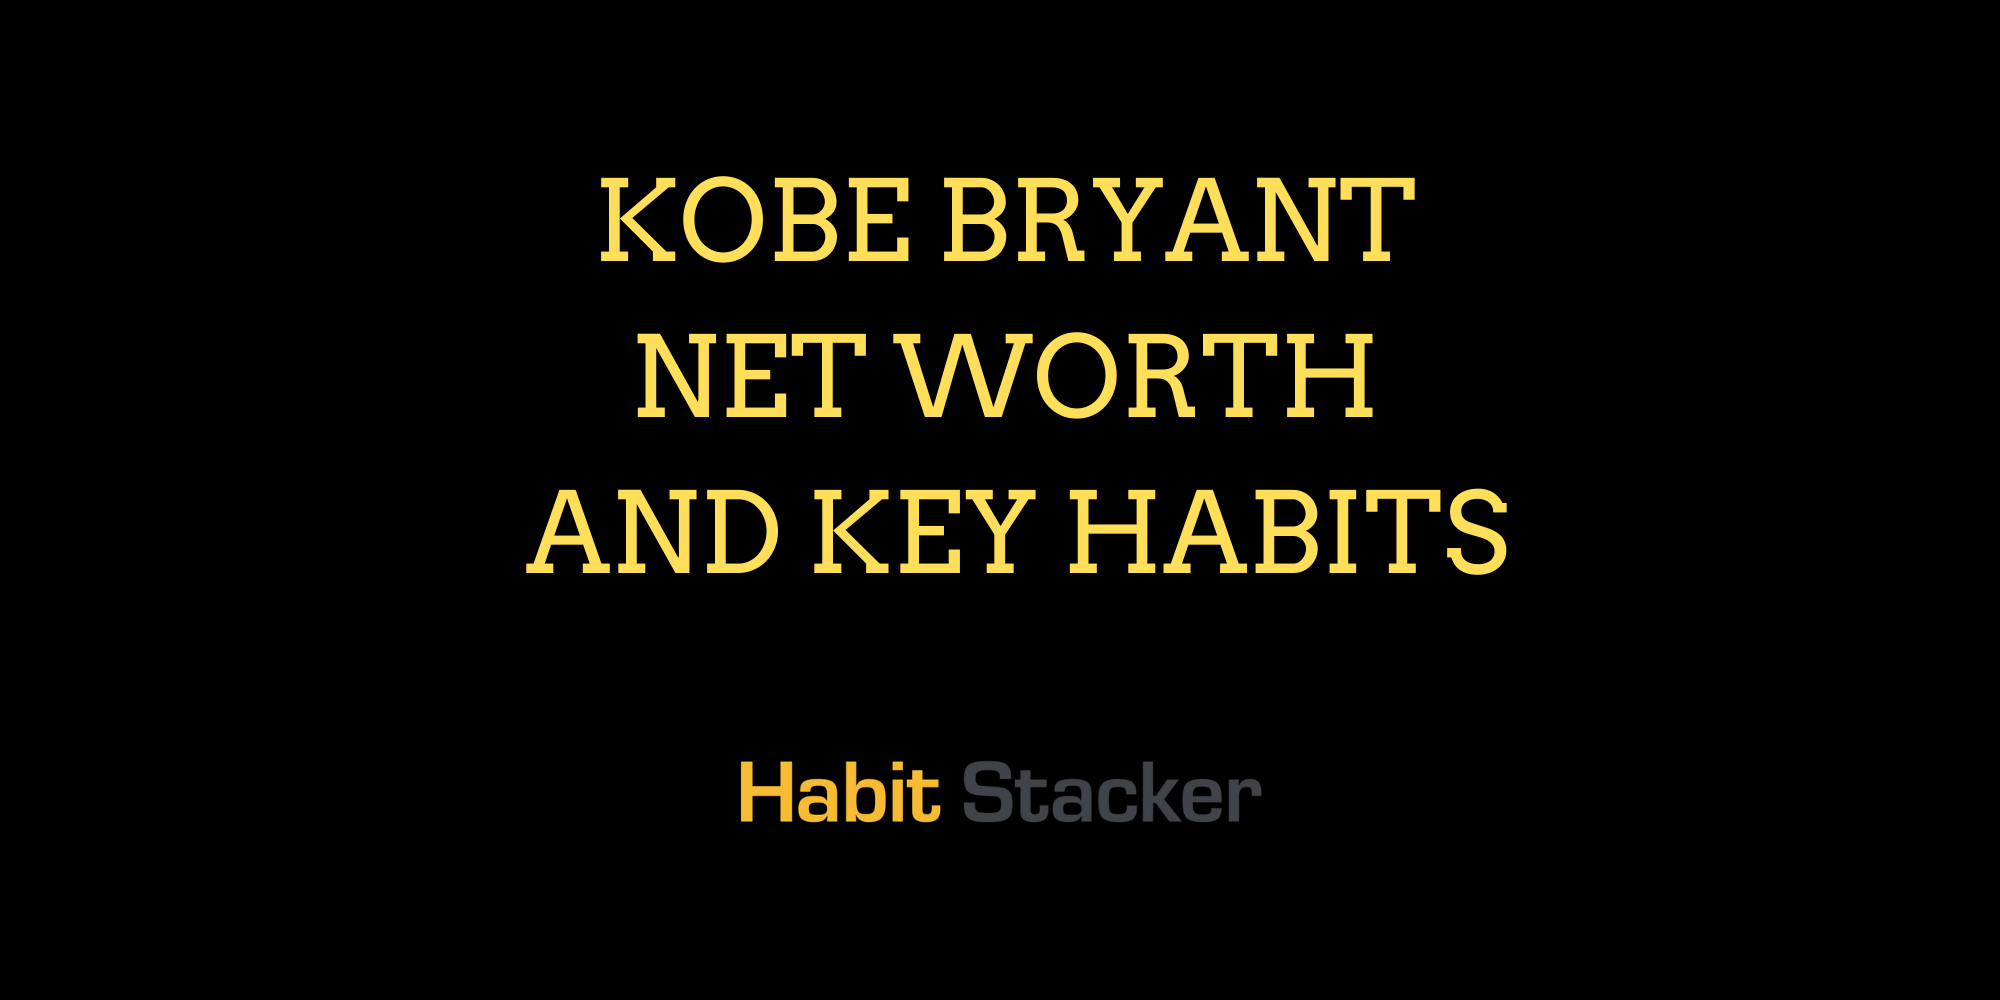 Kobe Bryant Net Worth and Key Habits